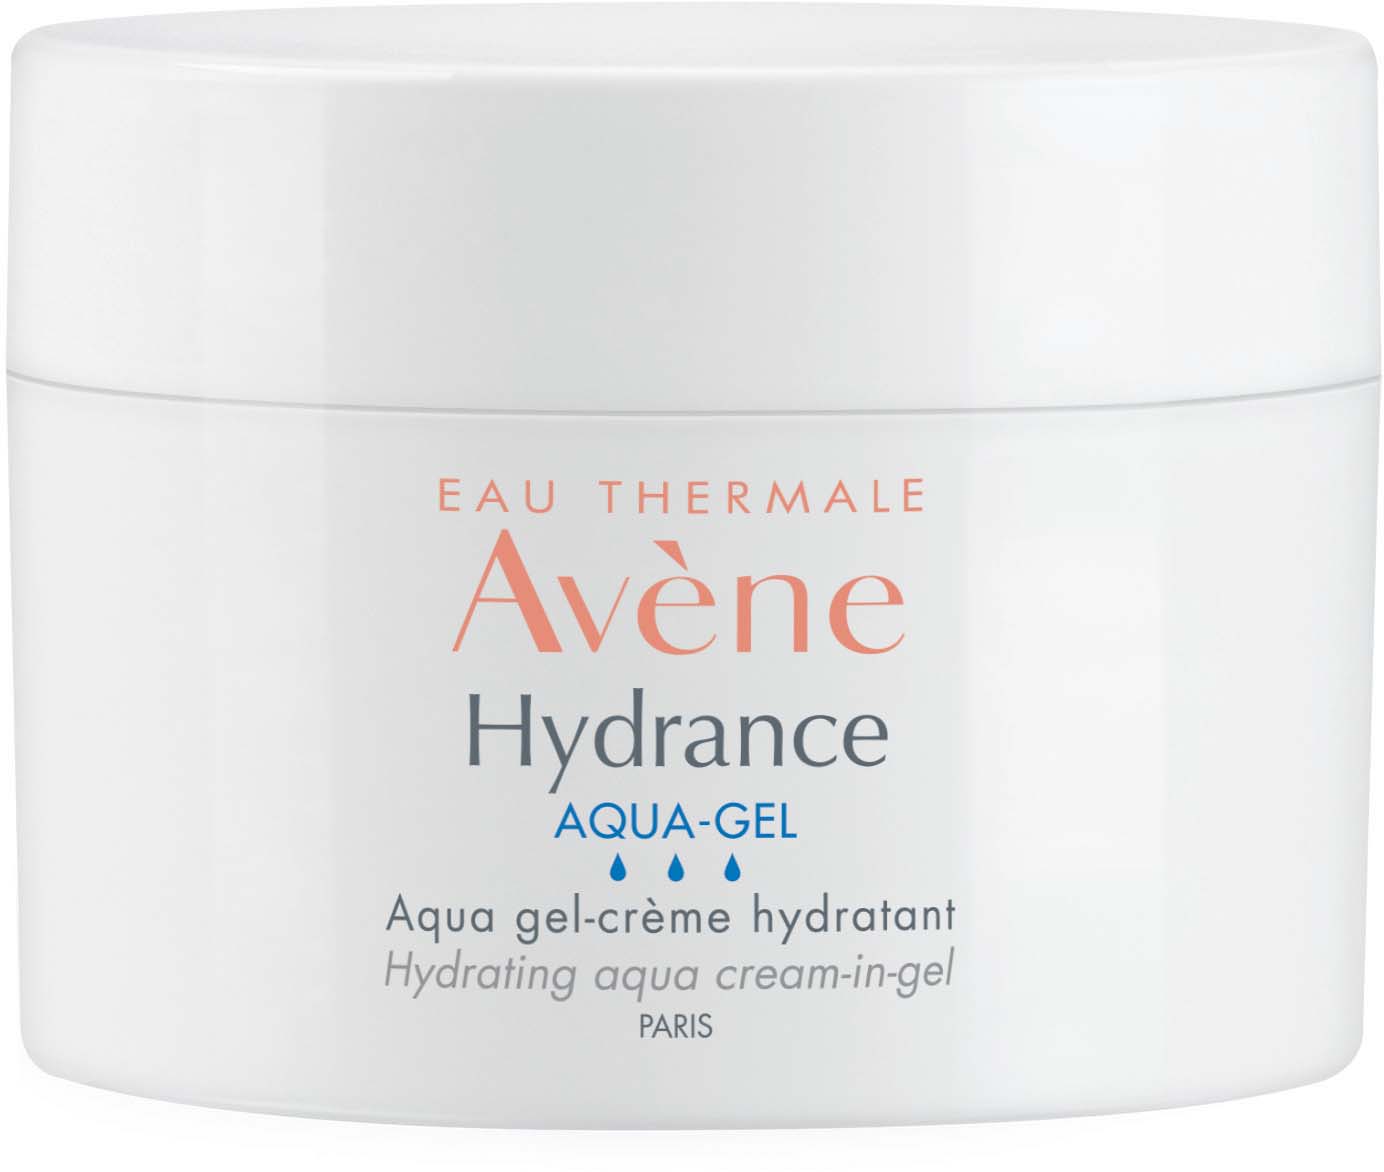 Avene Hydrance аква-гель для лица всех тип кожи обзевоженной чувствительной кожи 50мл